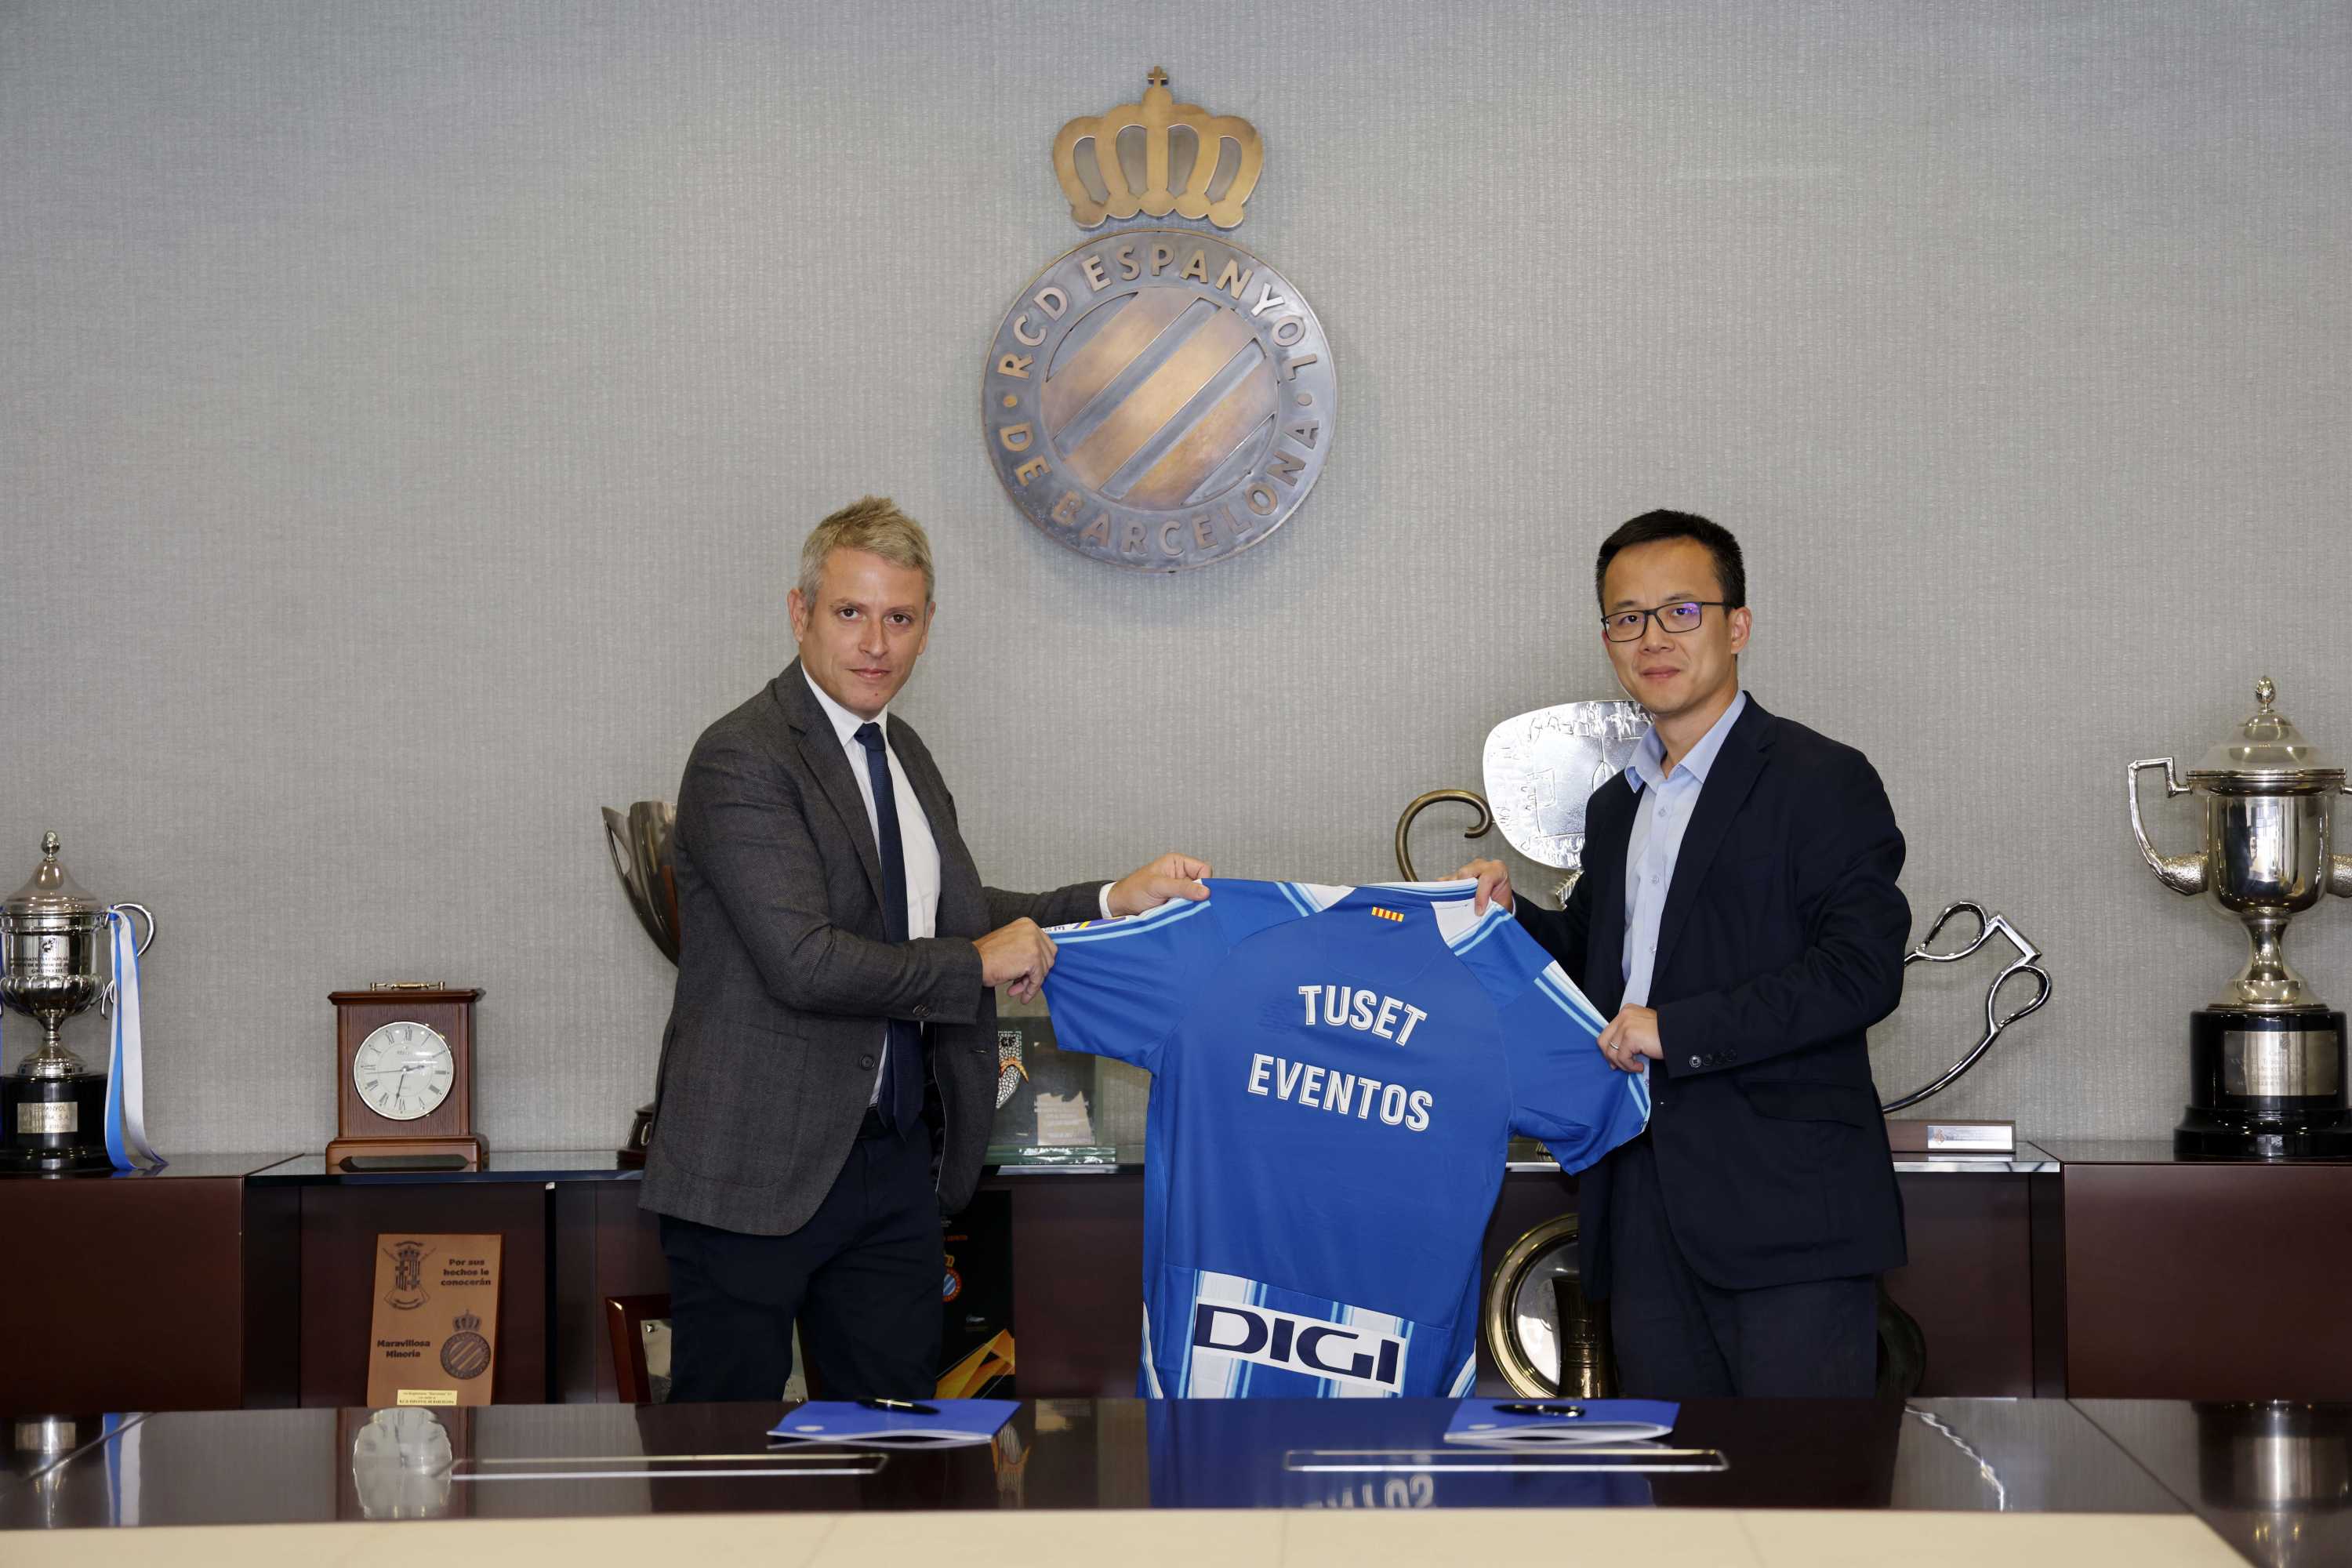 Acord entre el RCD Espanyol i l'agència Tuset Eventos